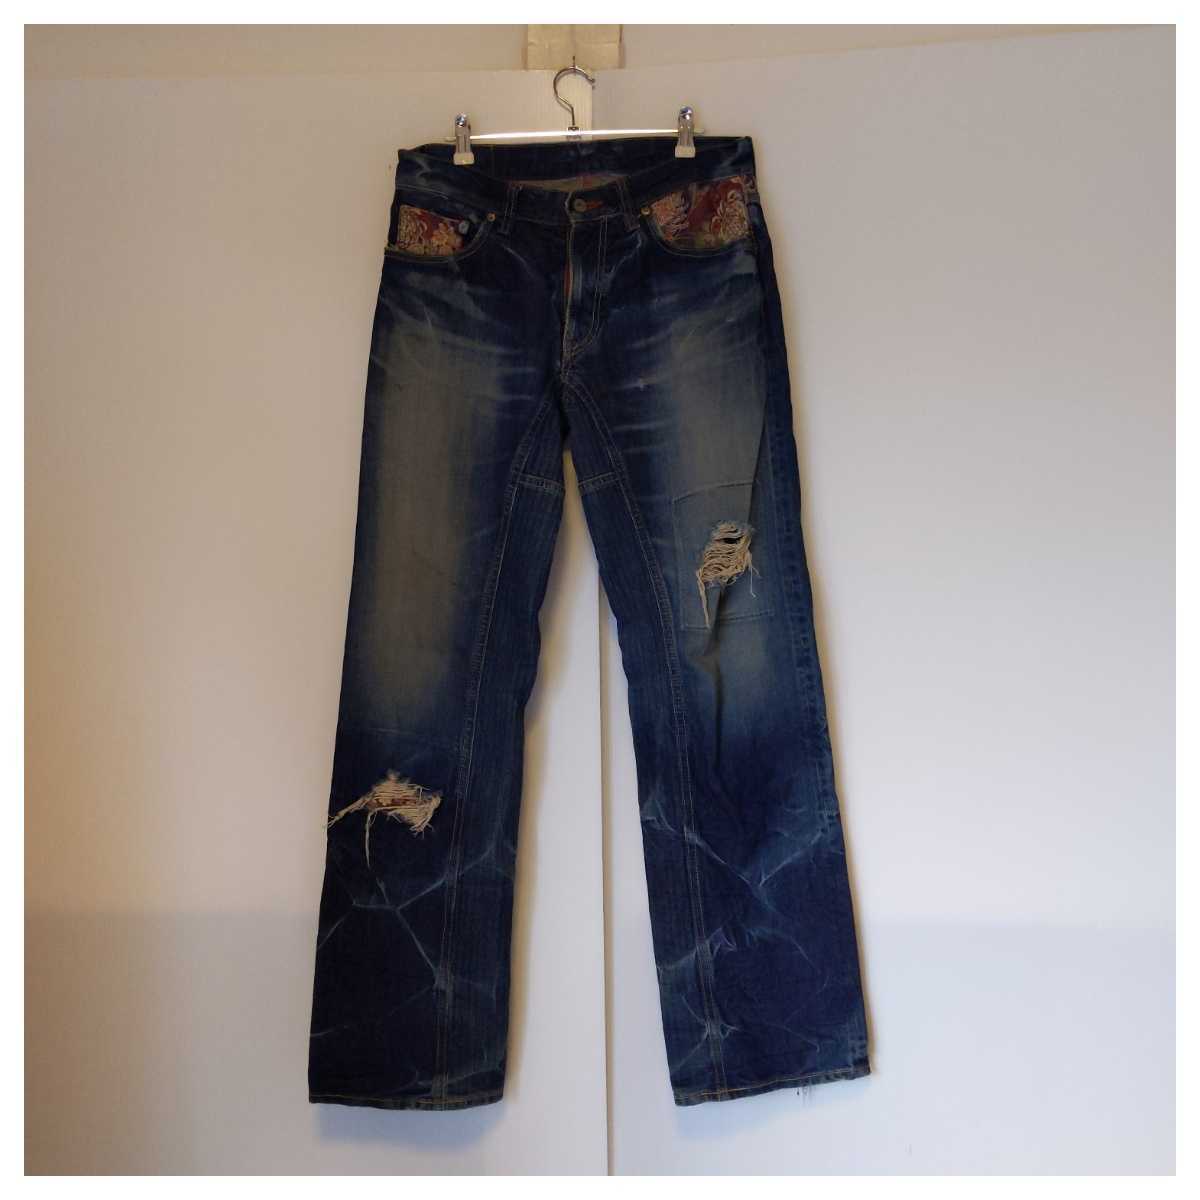 ☆ Eternal Kura Jeans Размер 32 Вечный/Сделано в Японии/Японские шаблоны/джинсовые штаны Indigo Blue